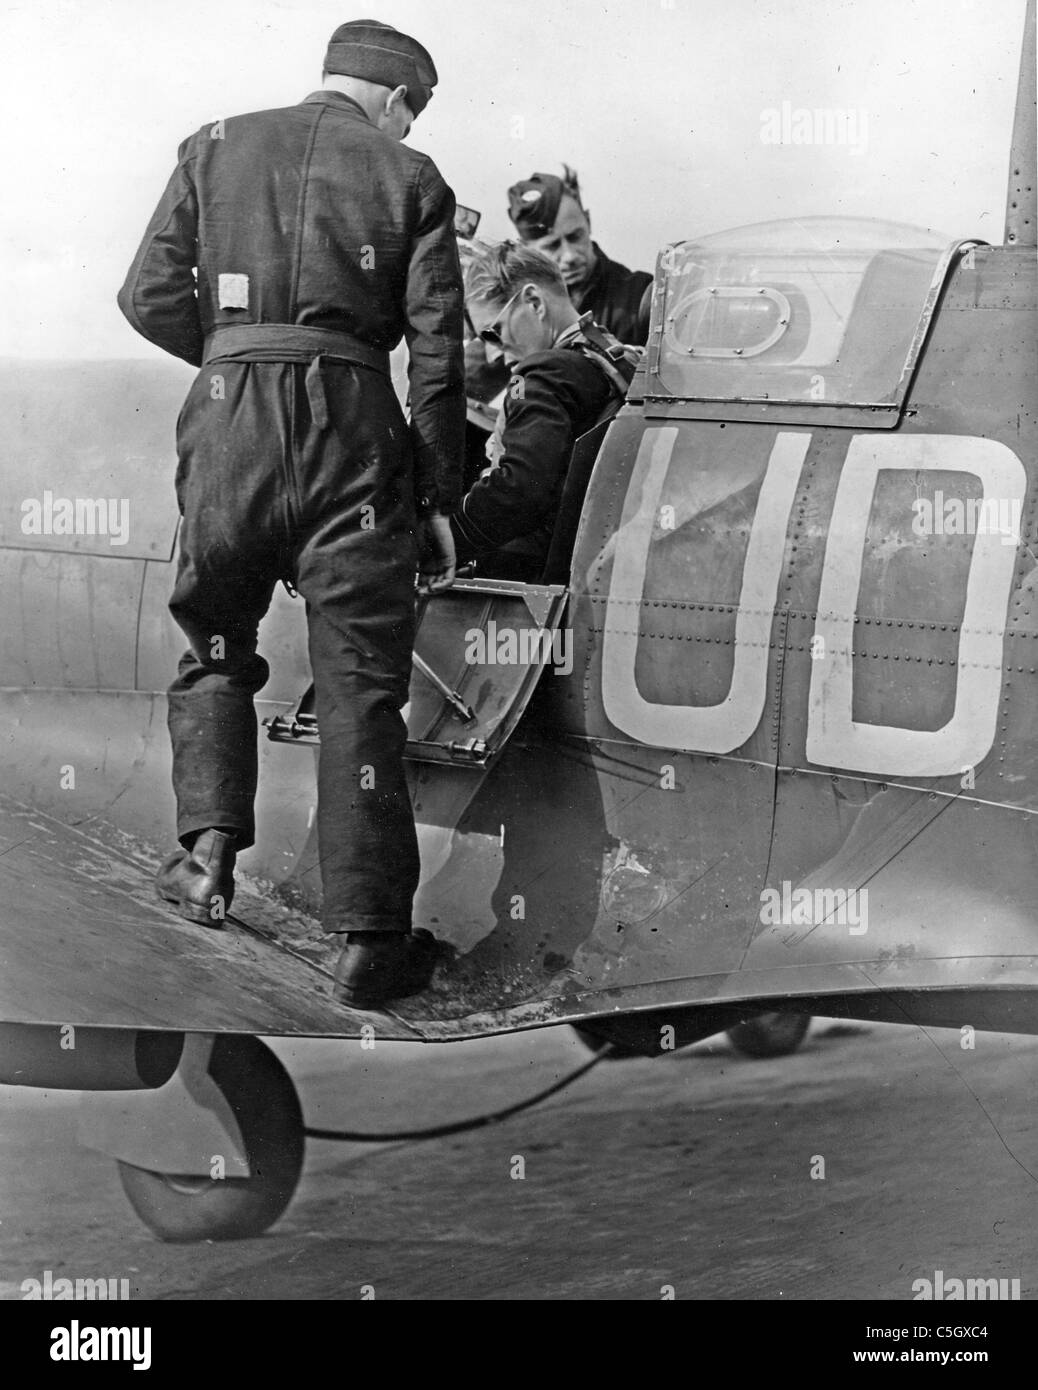 452 SQUADRON RAAF à RAF Kenley 20 septembre 1941. Le chef d'escadron Robert Bungey avant le décollage - voir description ci-dessous Banque D'Images